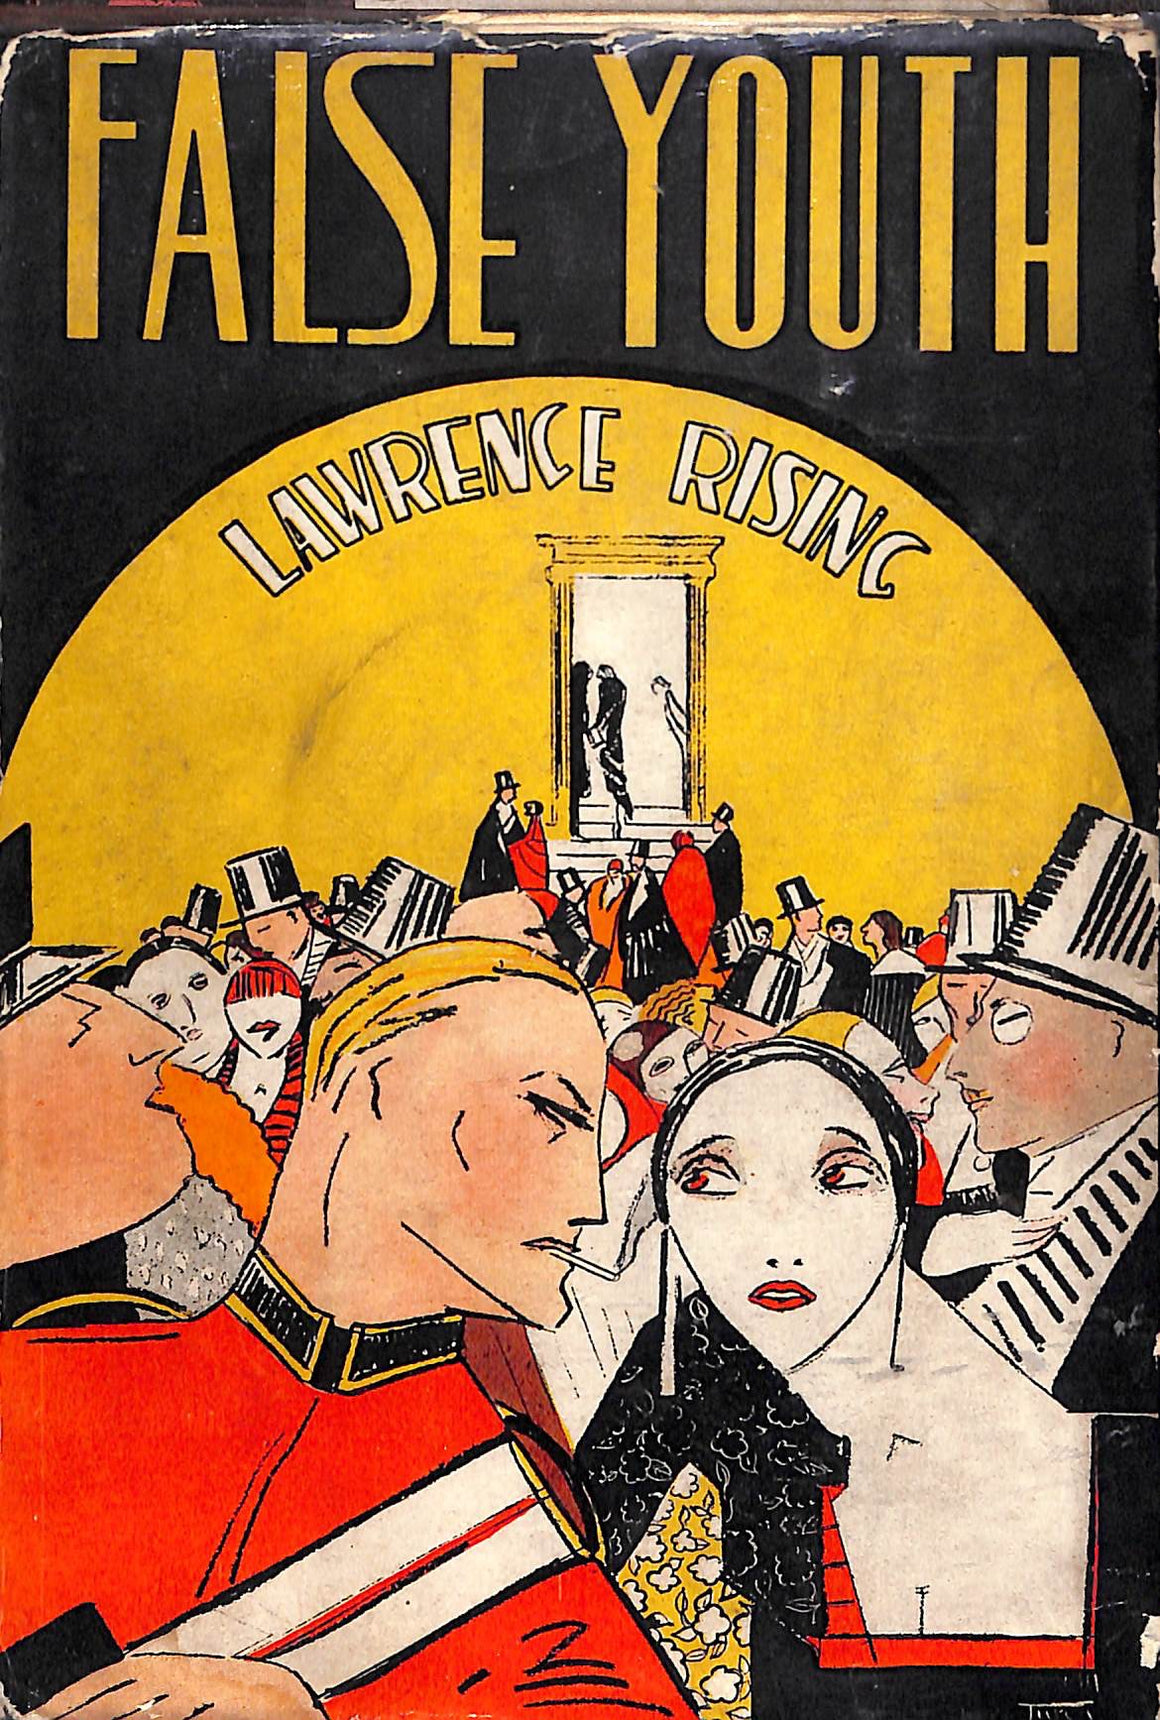 "False Youth" 1929